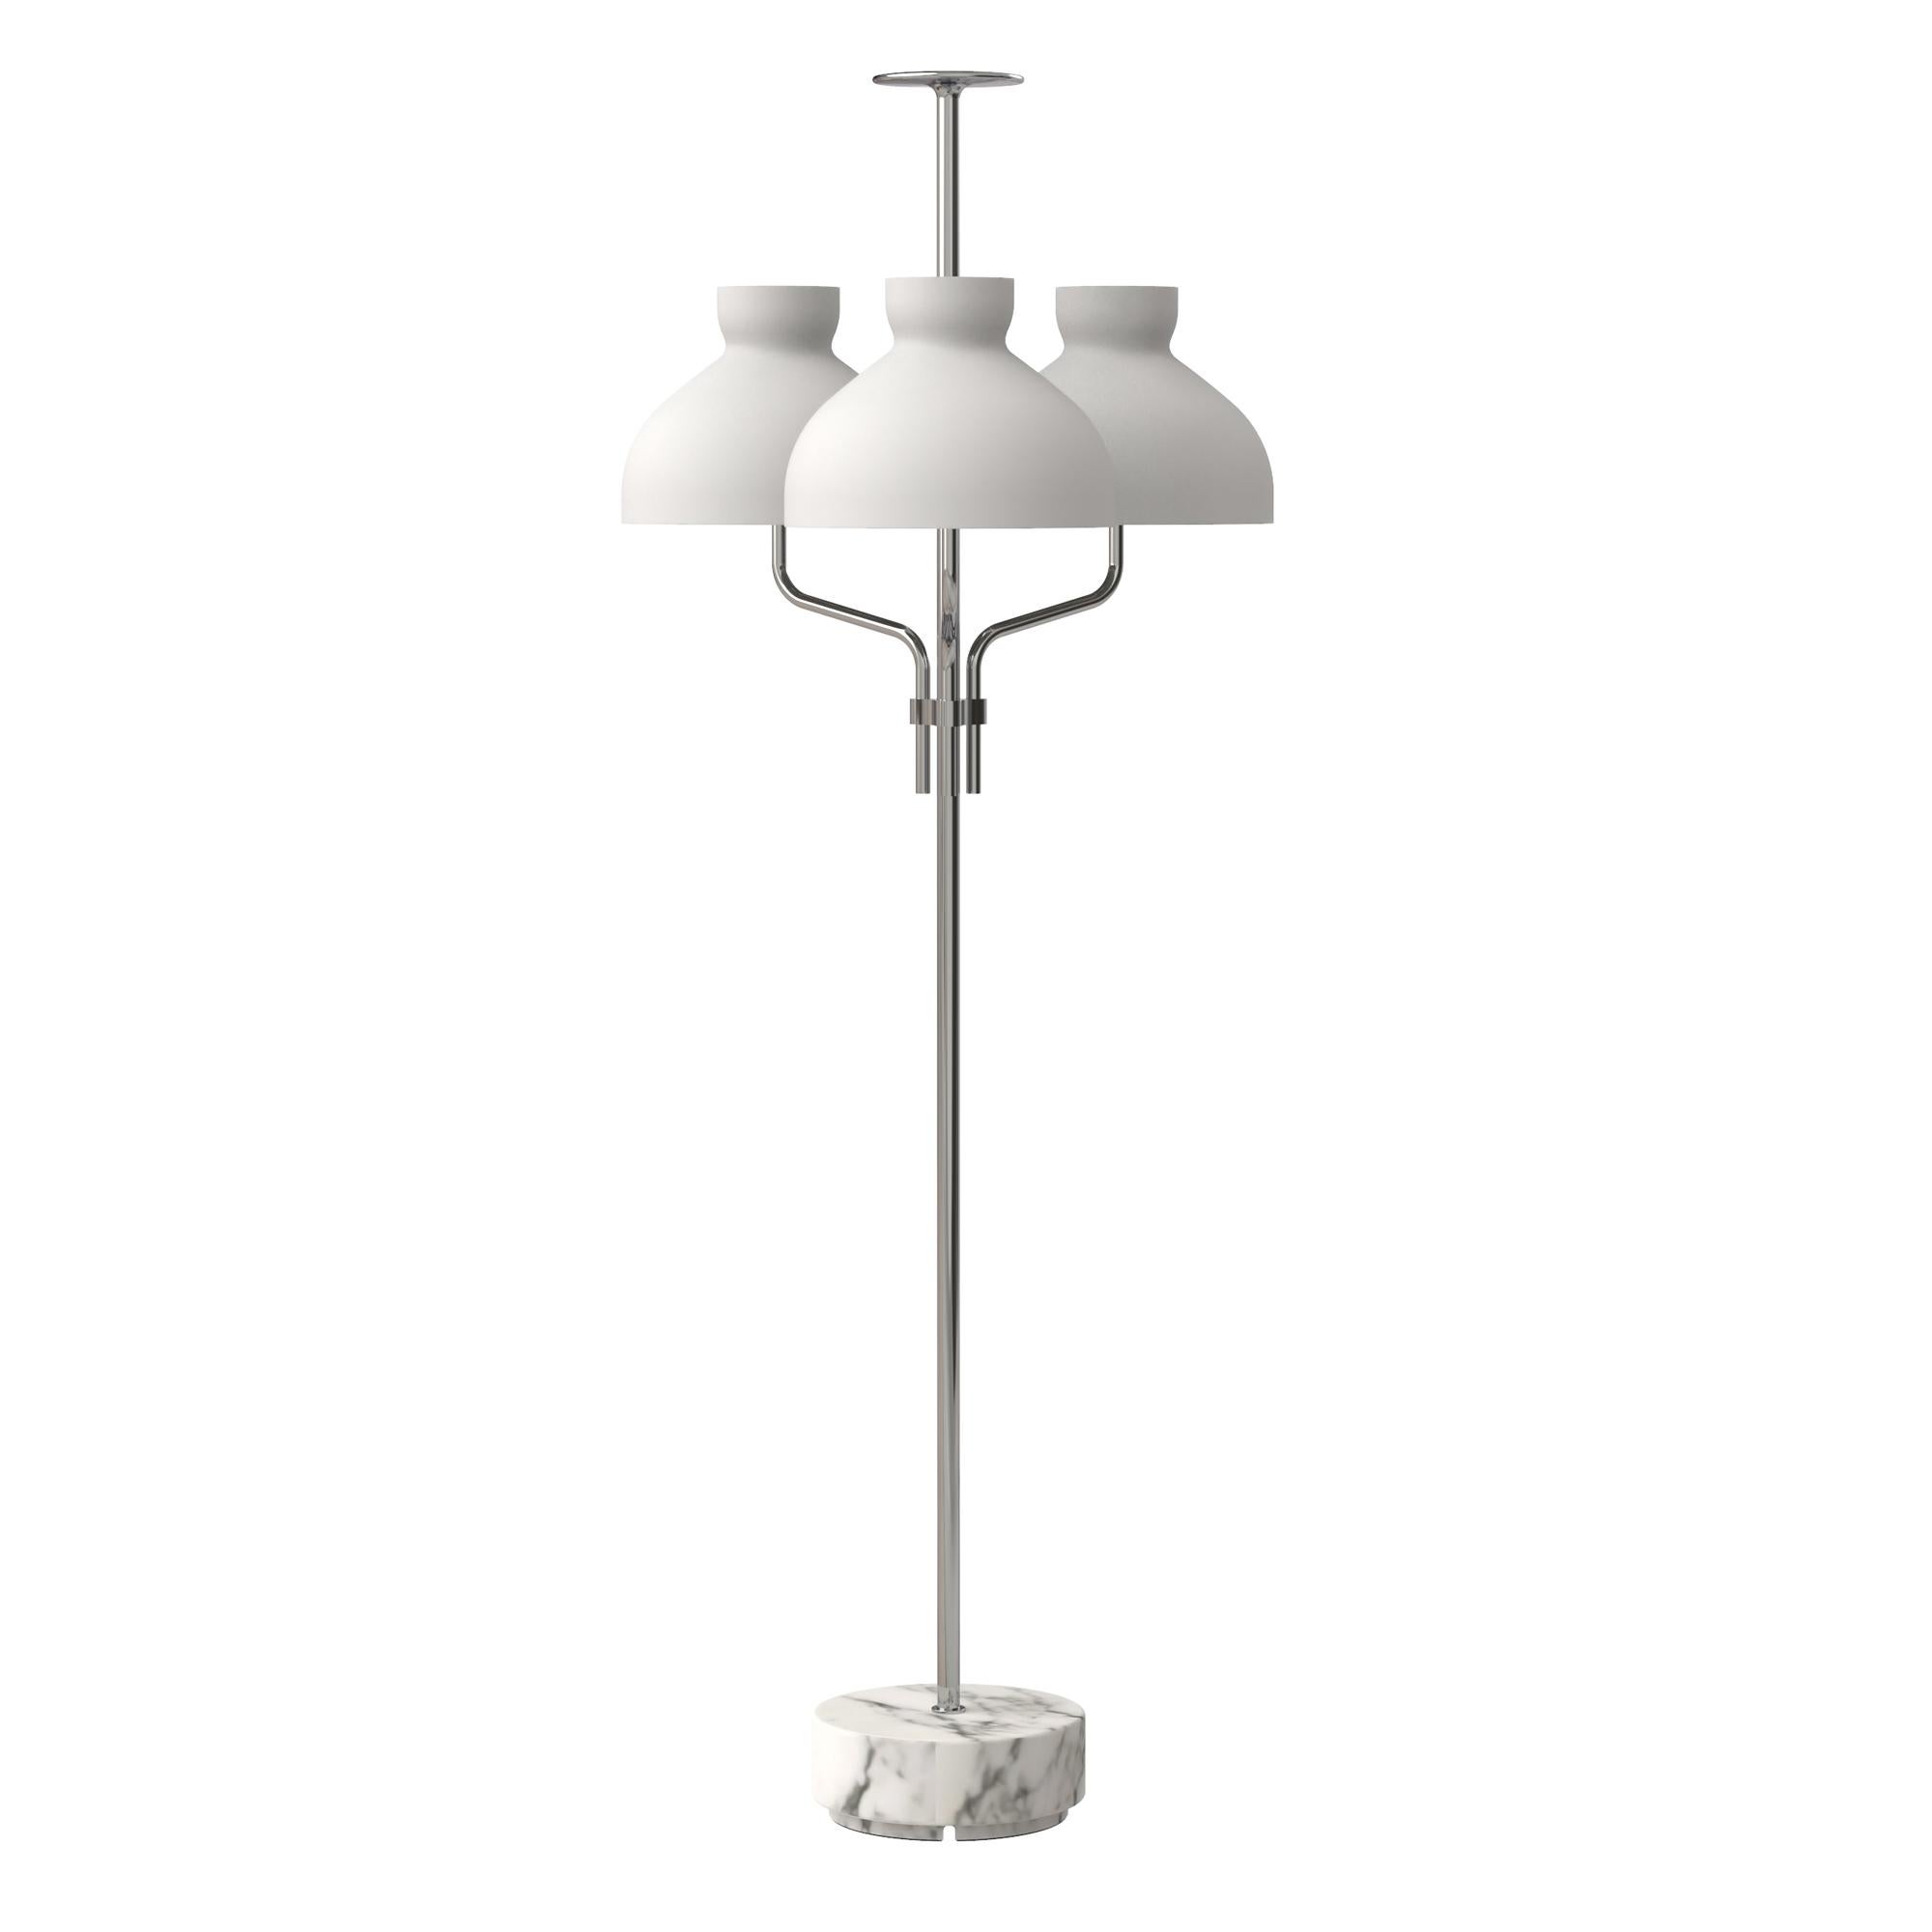 Ignazio Gardella 'Arenzano Tre Fiamme' Floor Lamp in White Marble and Chrome For Sale 1